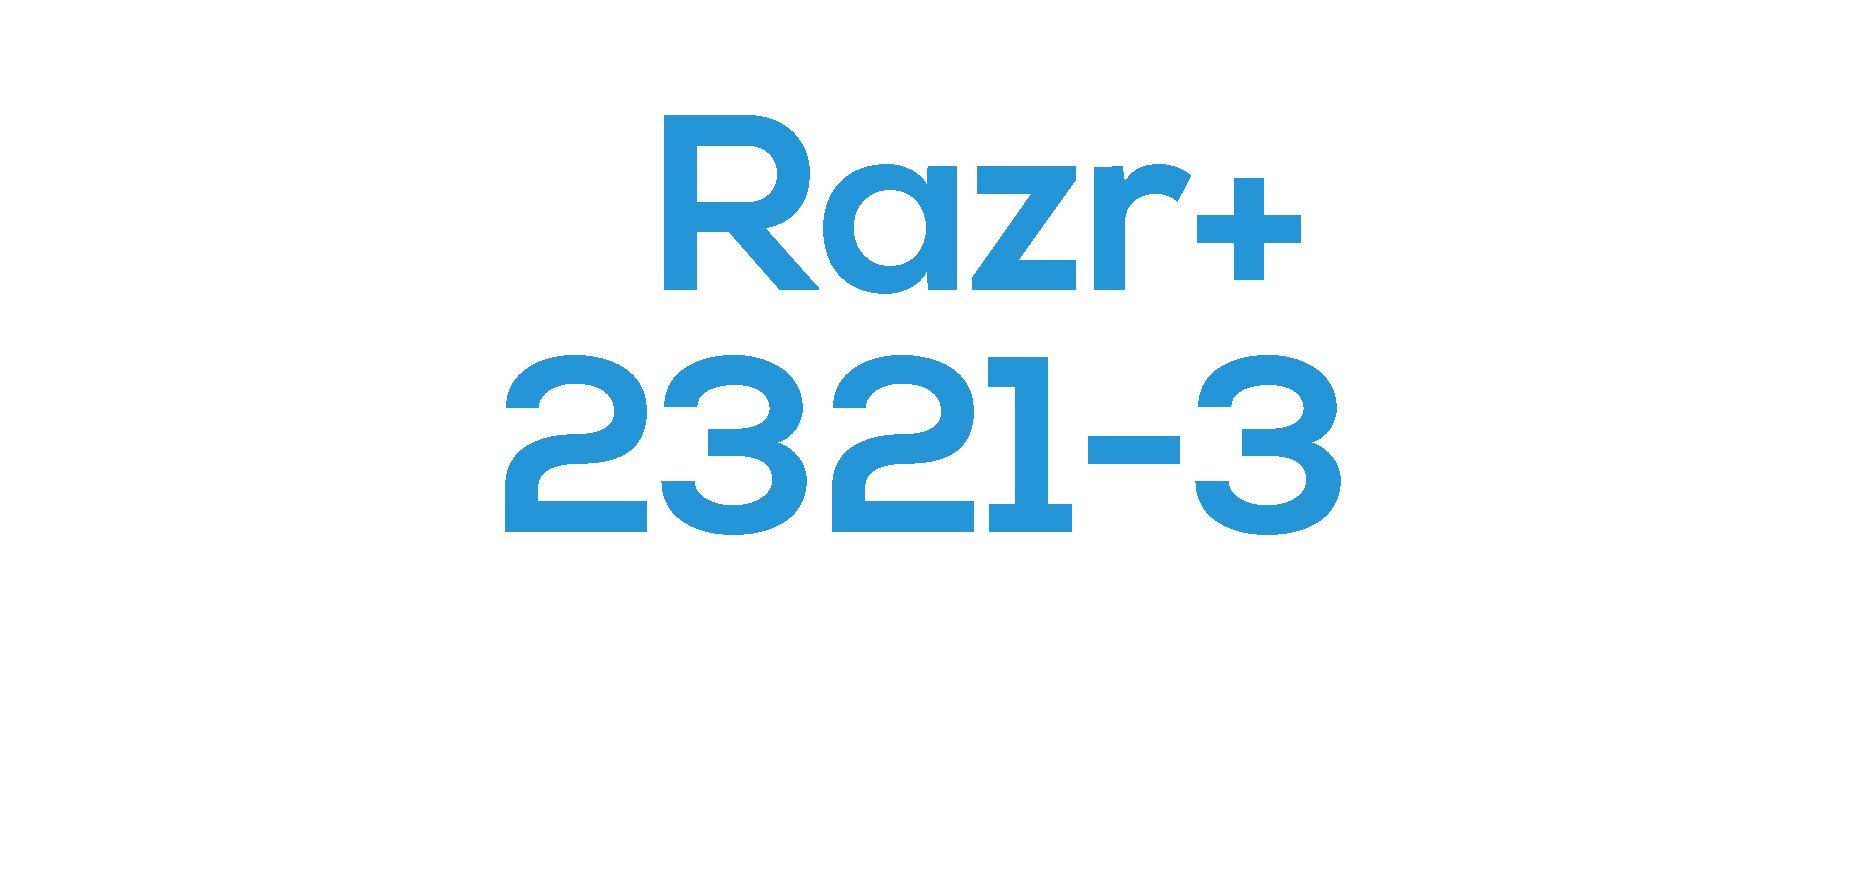 Razr+ (XT2321-3)